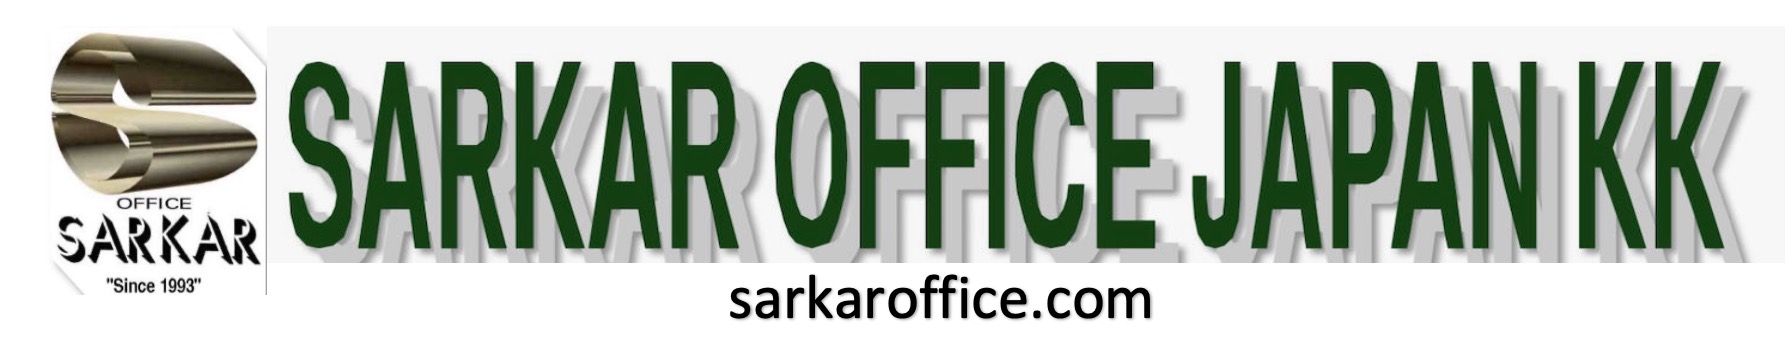 Sarkar Office® since 1993